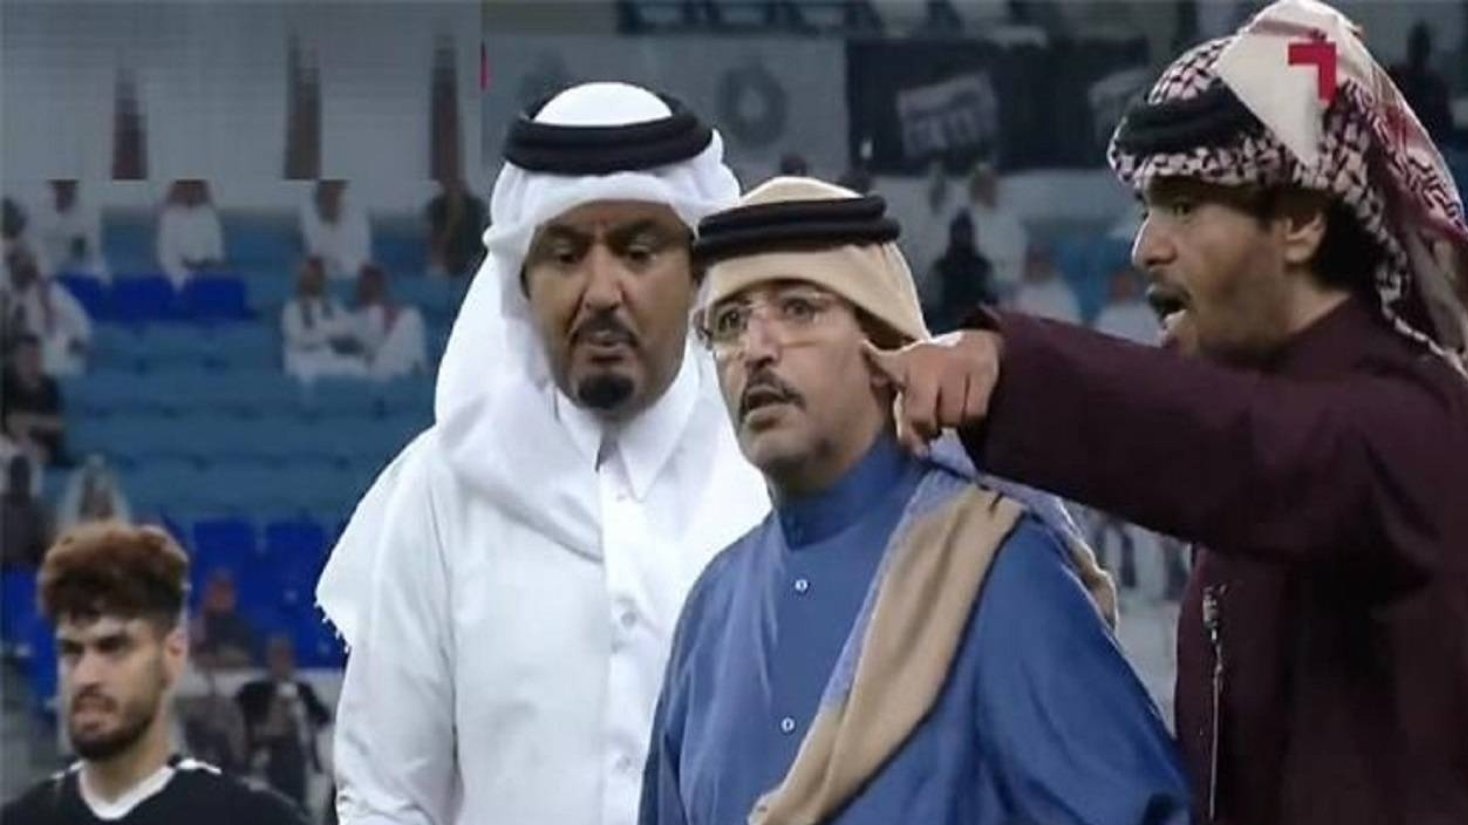 عوقب الشيخ خليفة بن حسن آل ثاني (بالأزرق) بالمنع من دخول الملاعب لمدة نصف عام